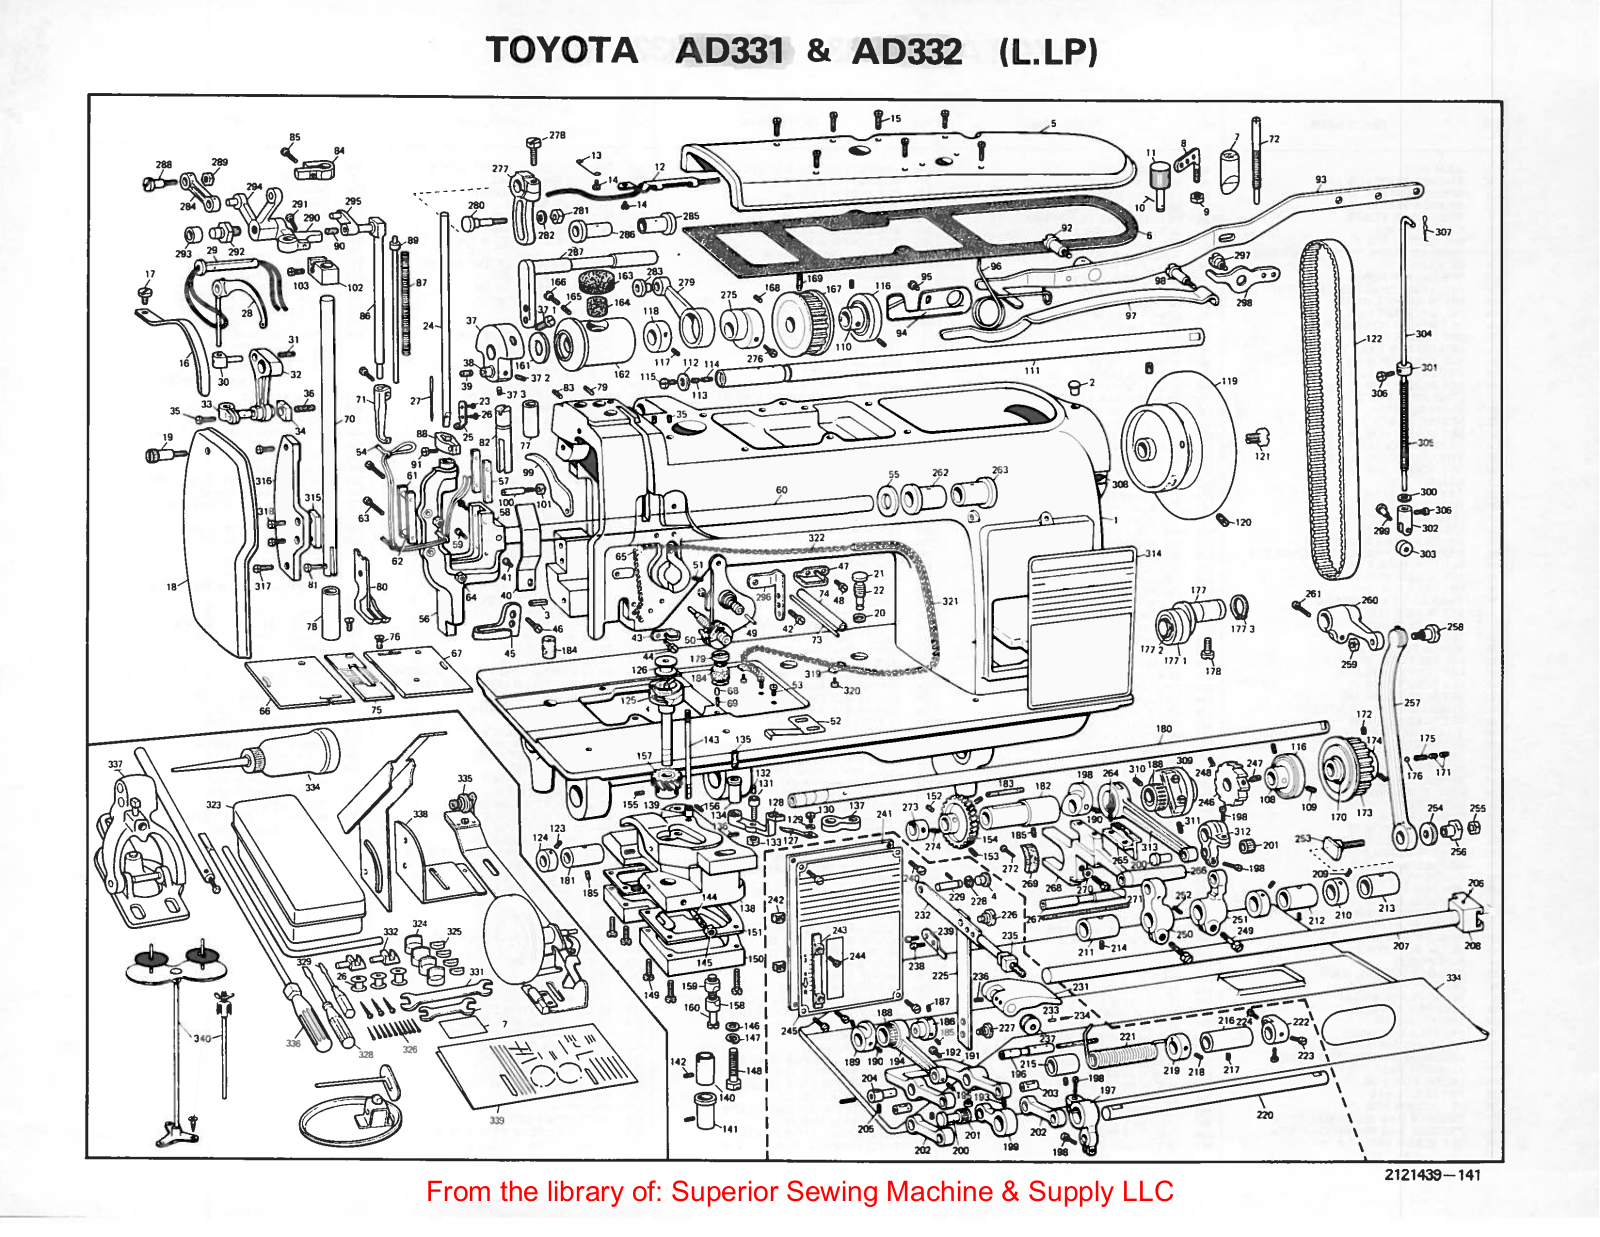 Toyota AD331, AD332 Manual